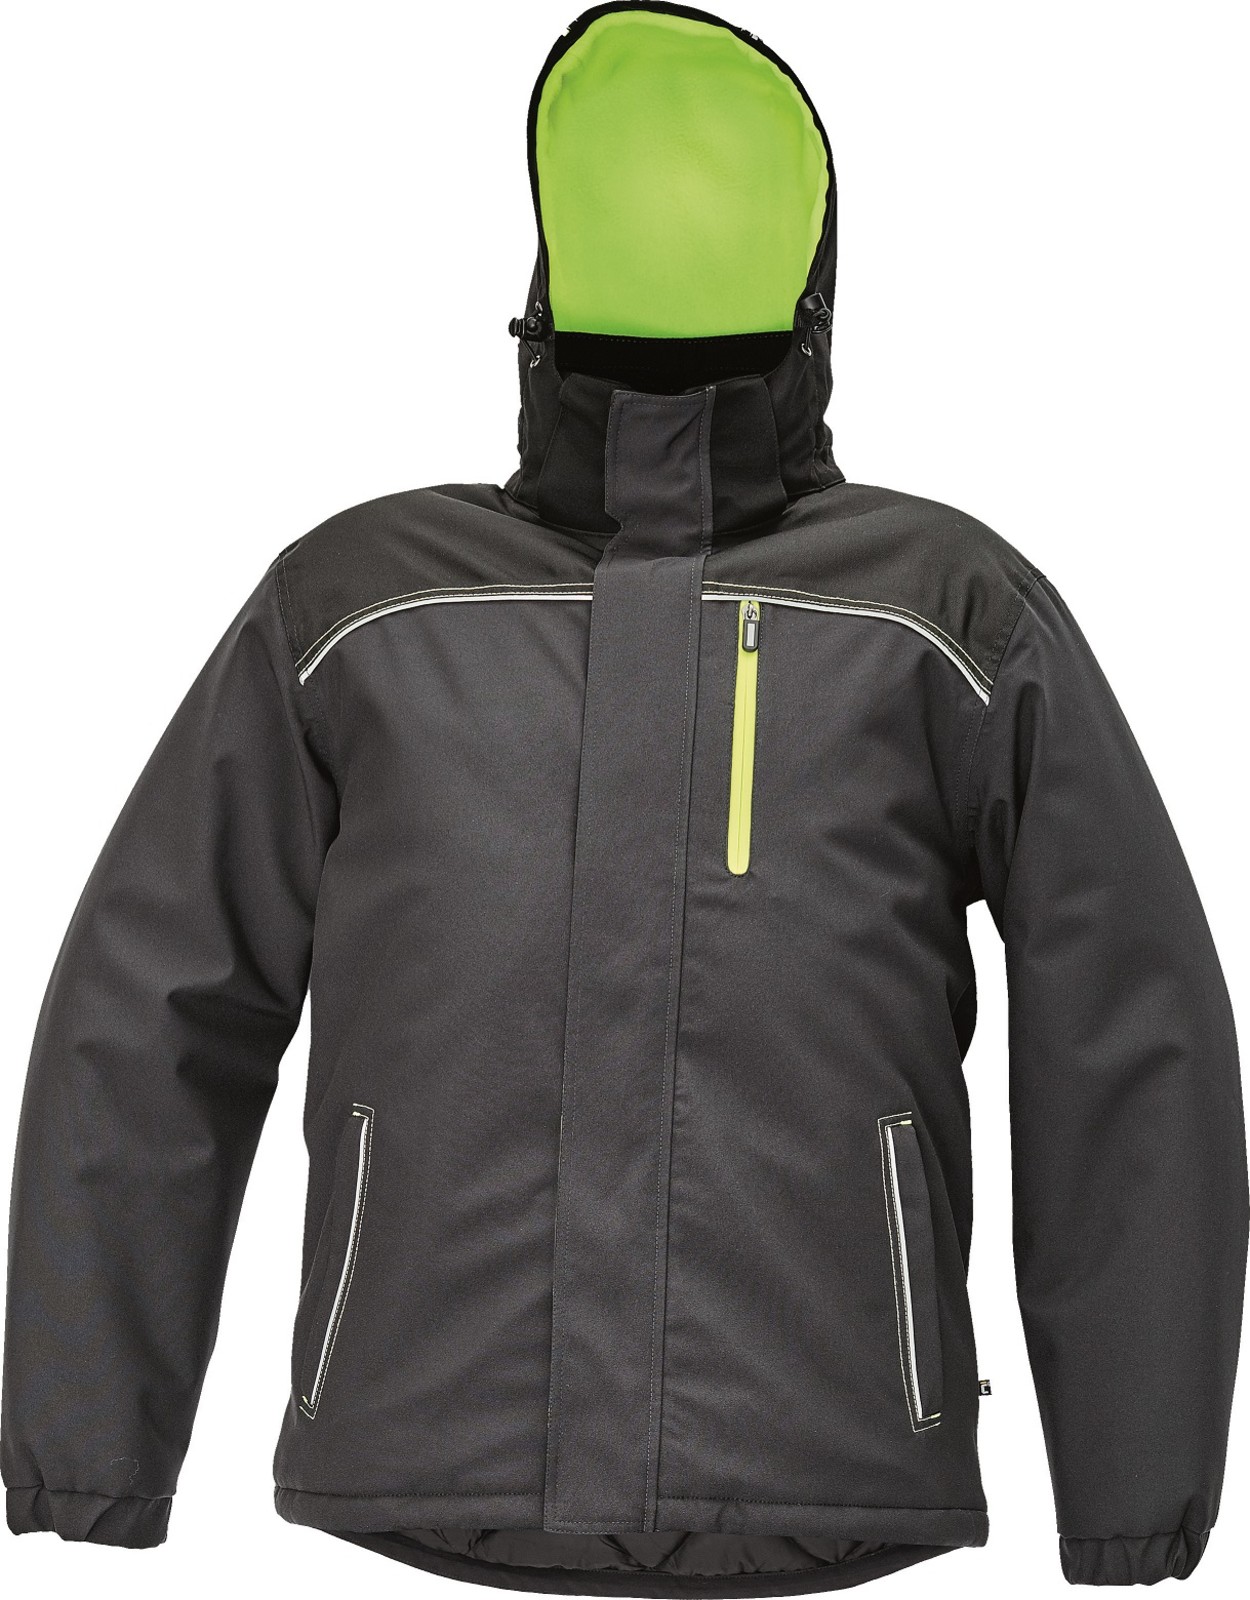 Zimná bunda Cerva Knoxfield pánska - veľkosť: S, farba: antracit/žltá